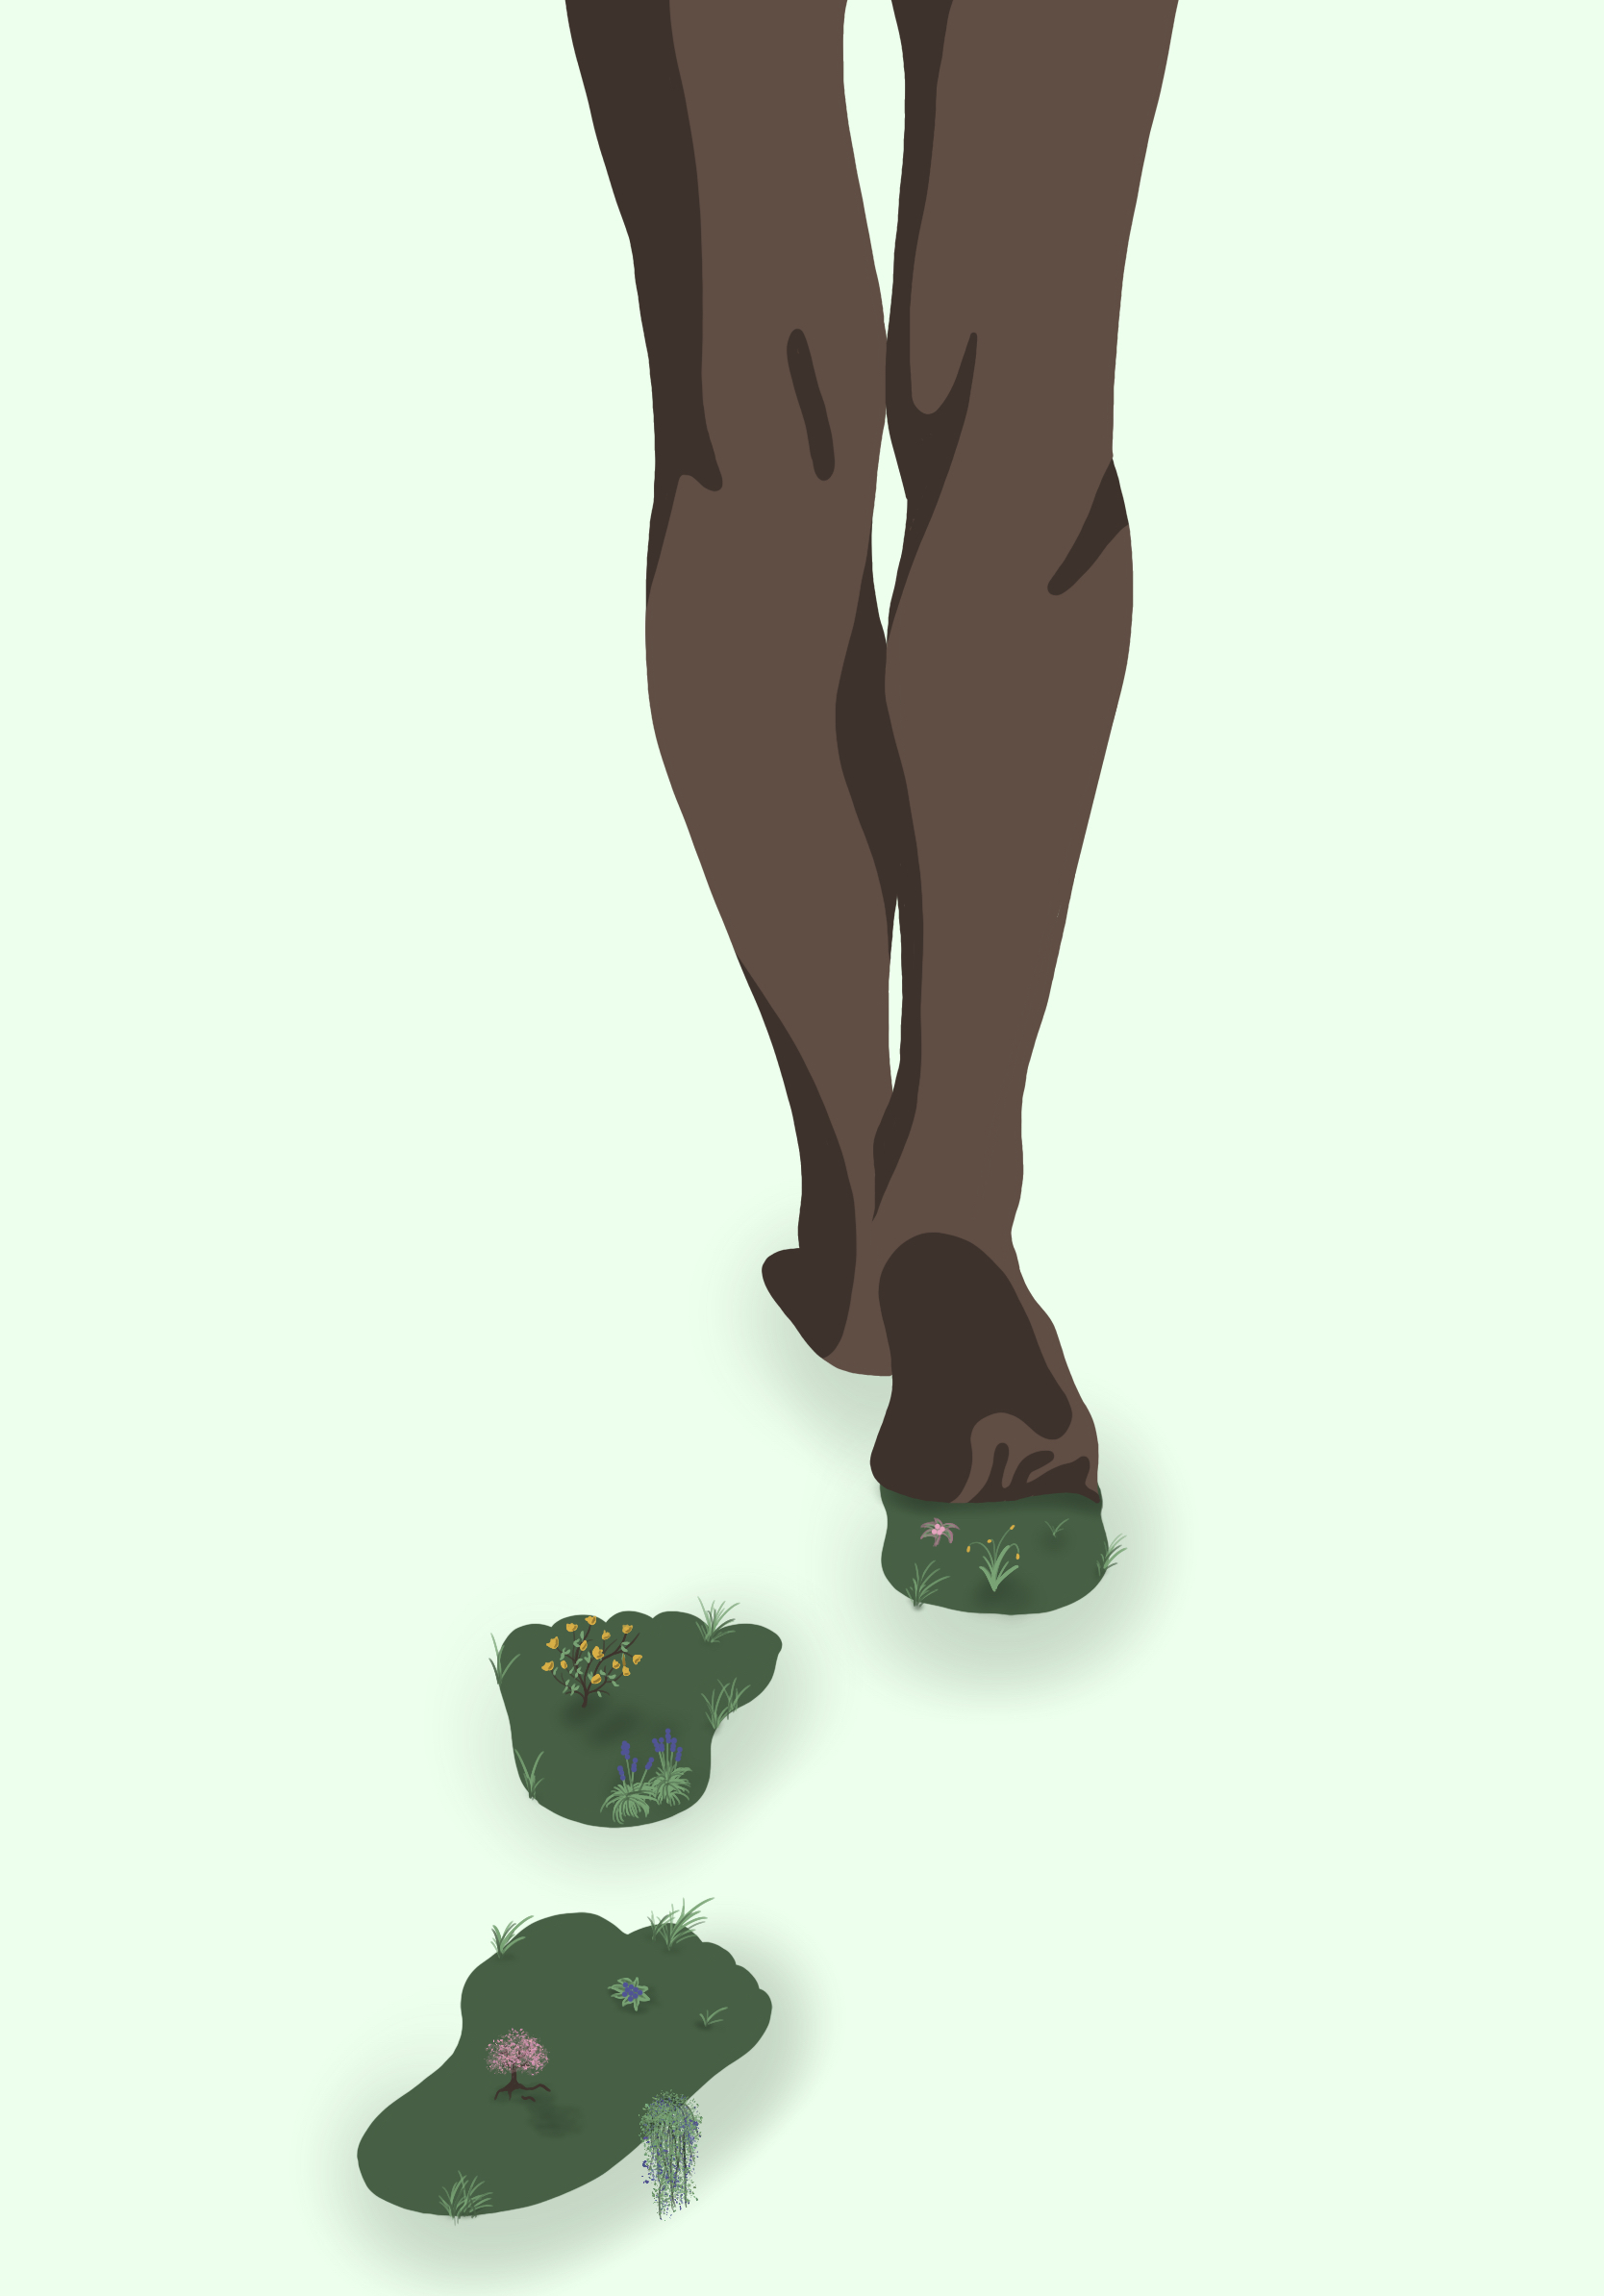 Illustration einer gehenden Person, die grün bewachsene Fußabdrücke hinterlässt